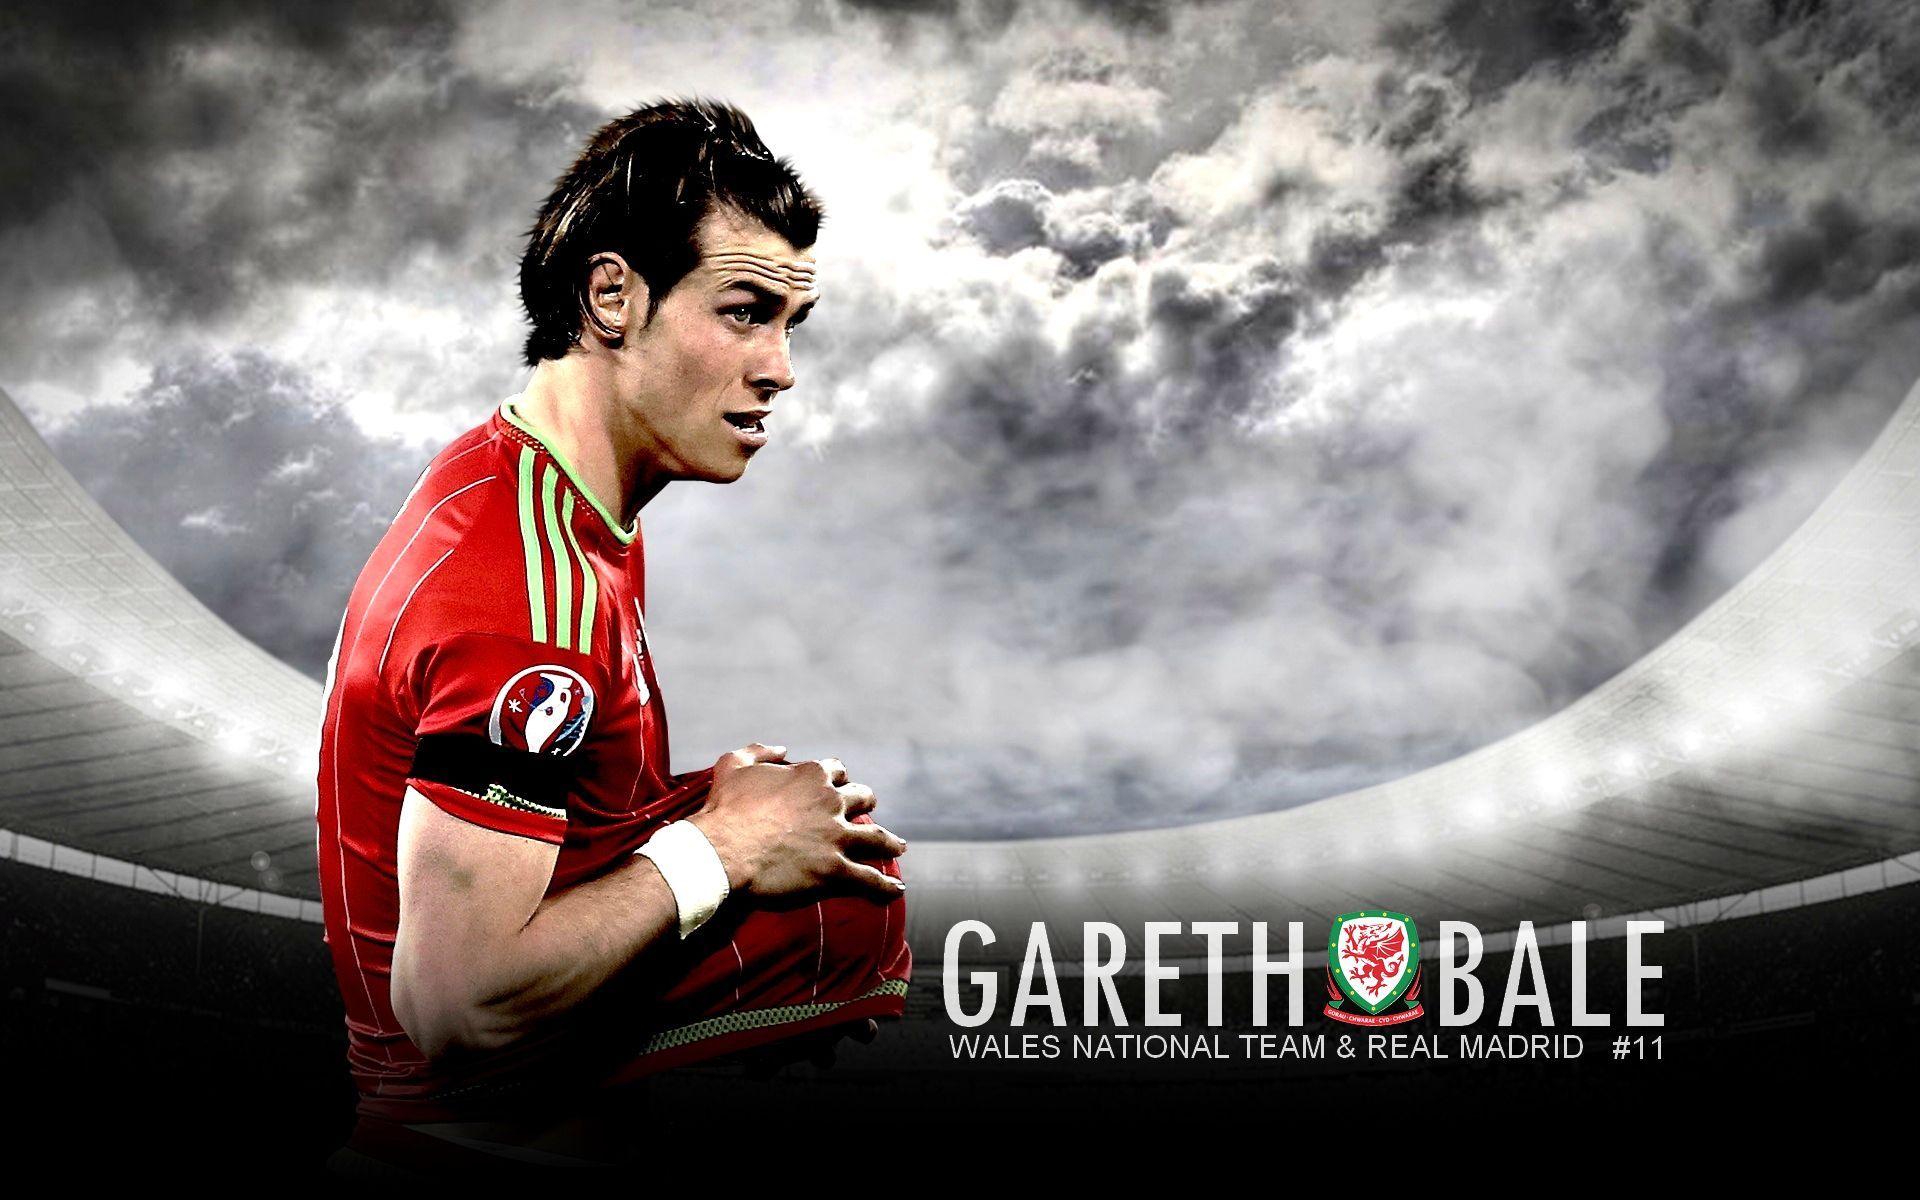 Gareth Bale Wallpaper, HD Gareth Bale Wallpaper. Download